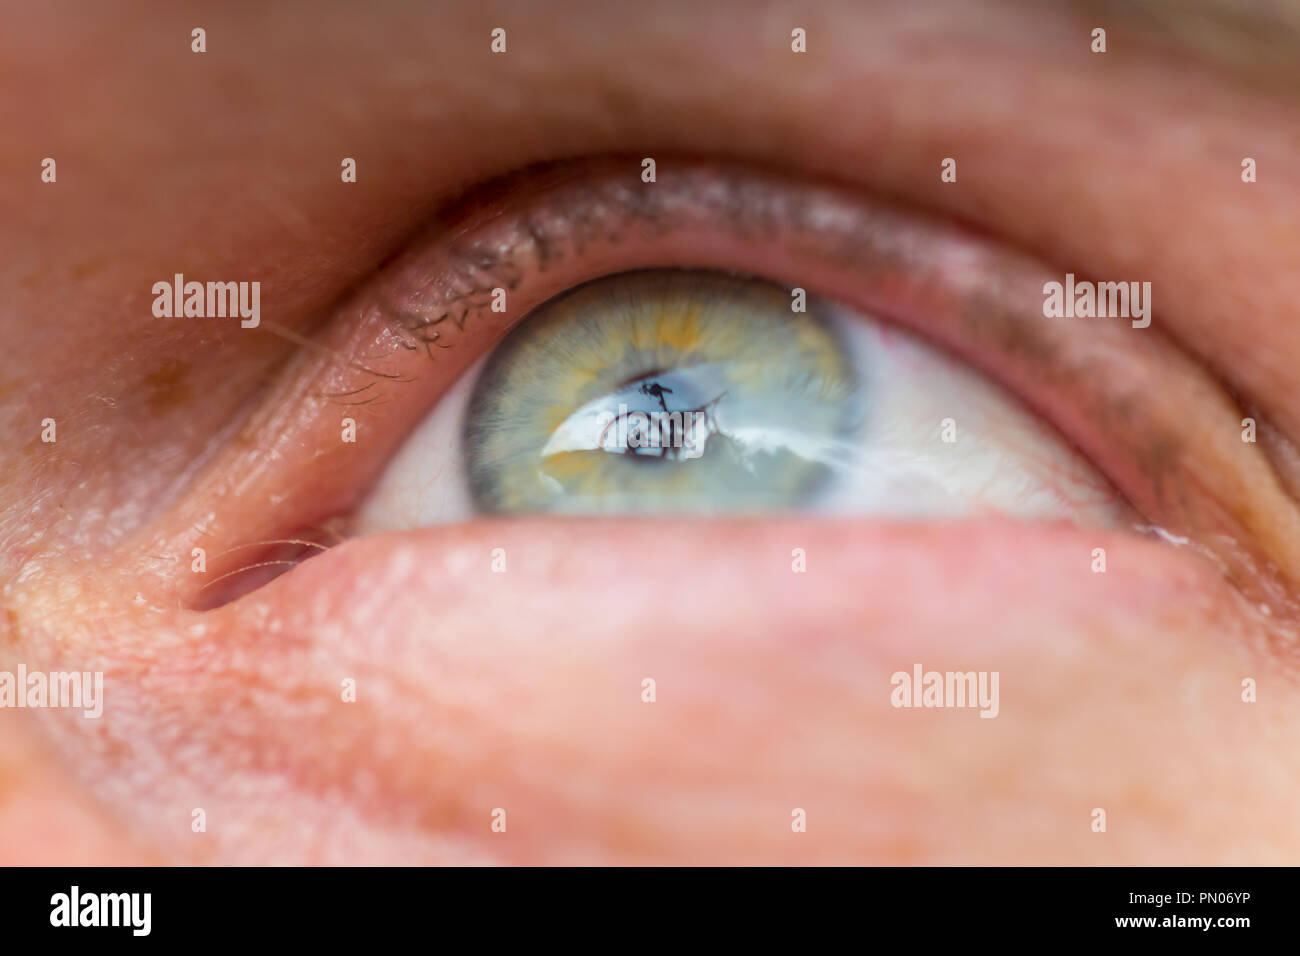 La riflessione di una bicicletta nella pupilla umana. Foto Stock